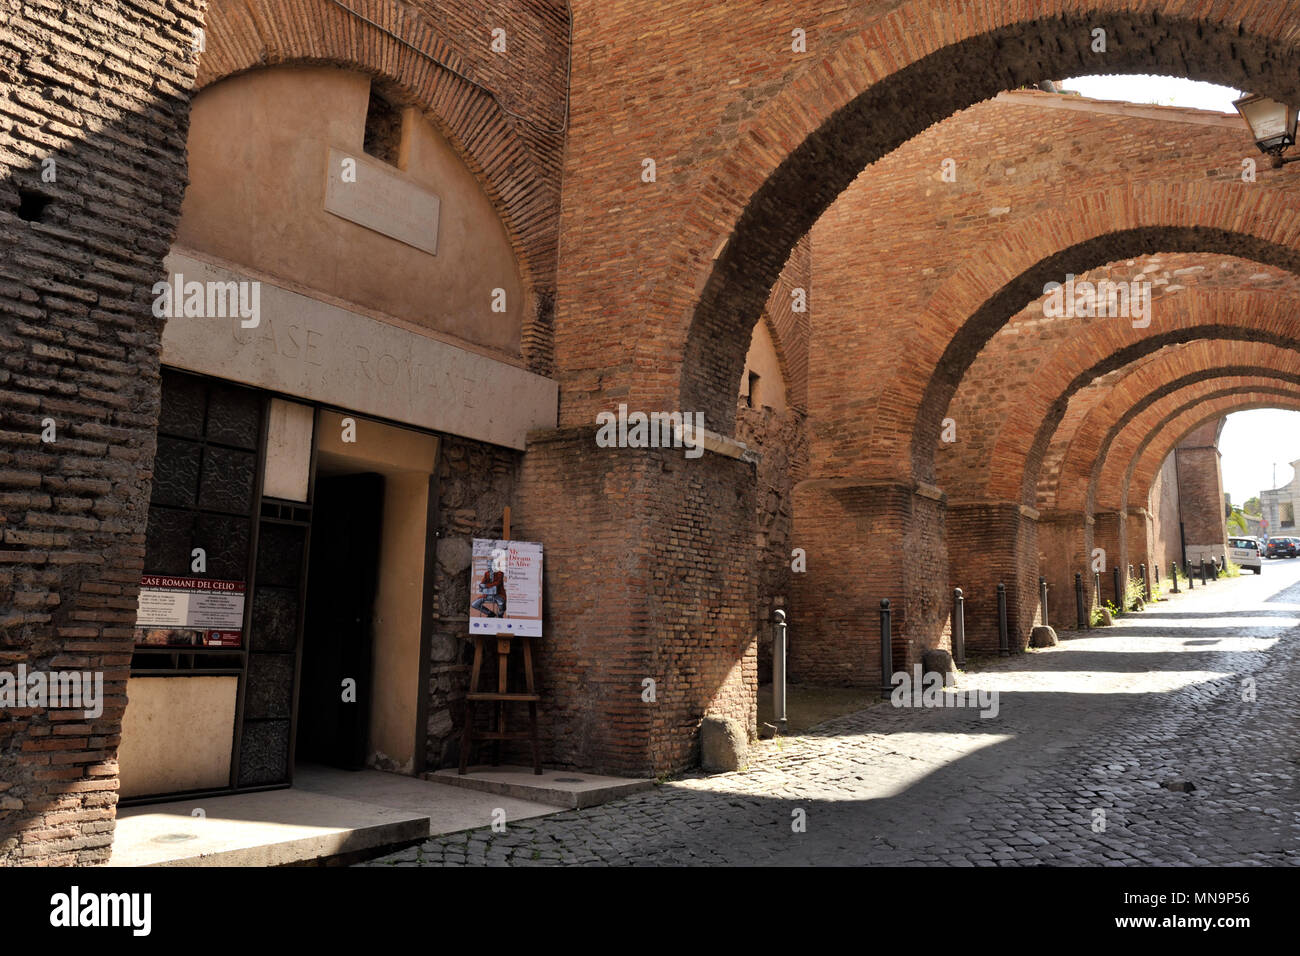 Italy, Rome, Celio, Clivo di Scauro, Case Romane del Celio and medieval arches Stock Photo